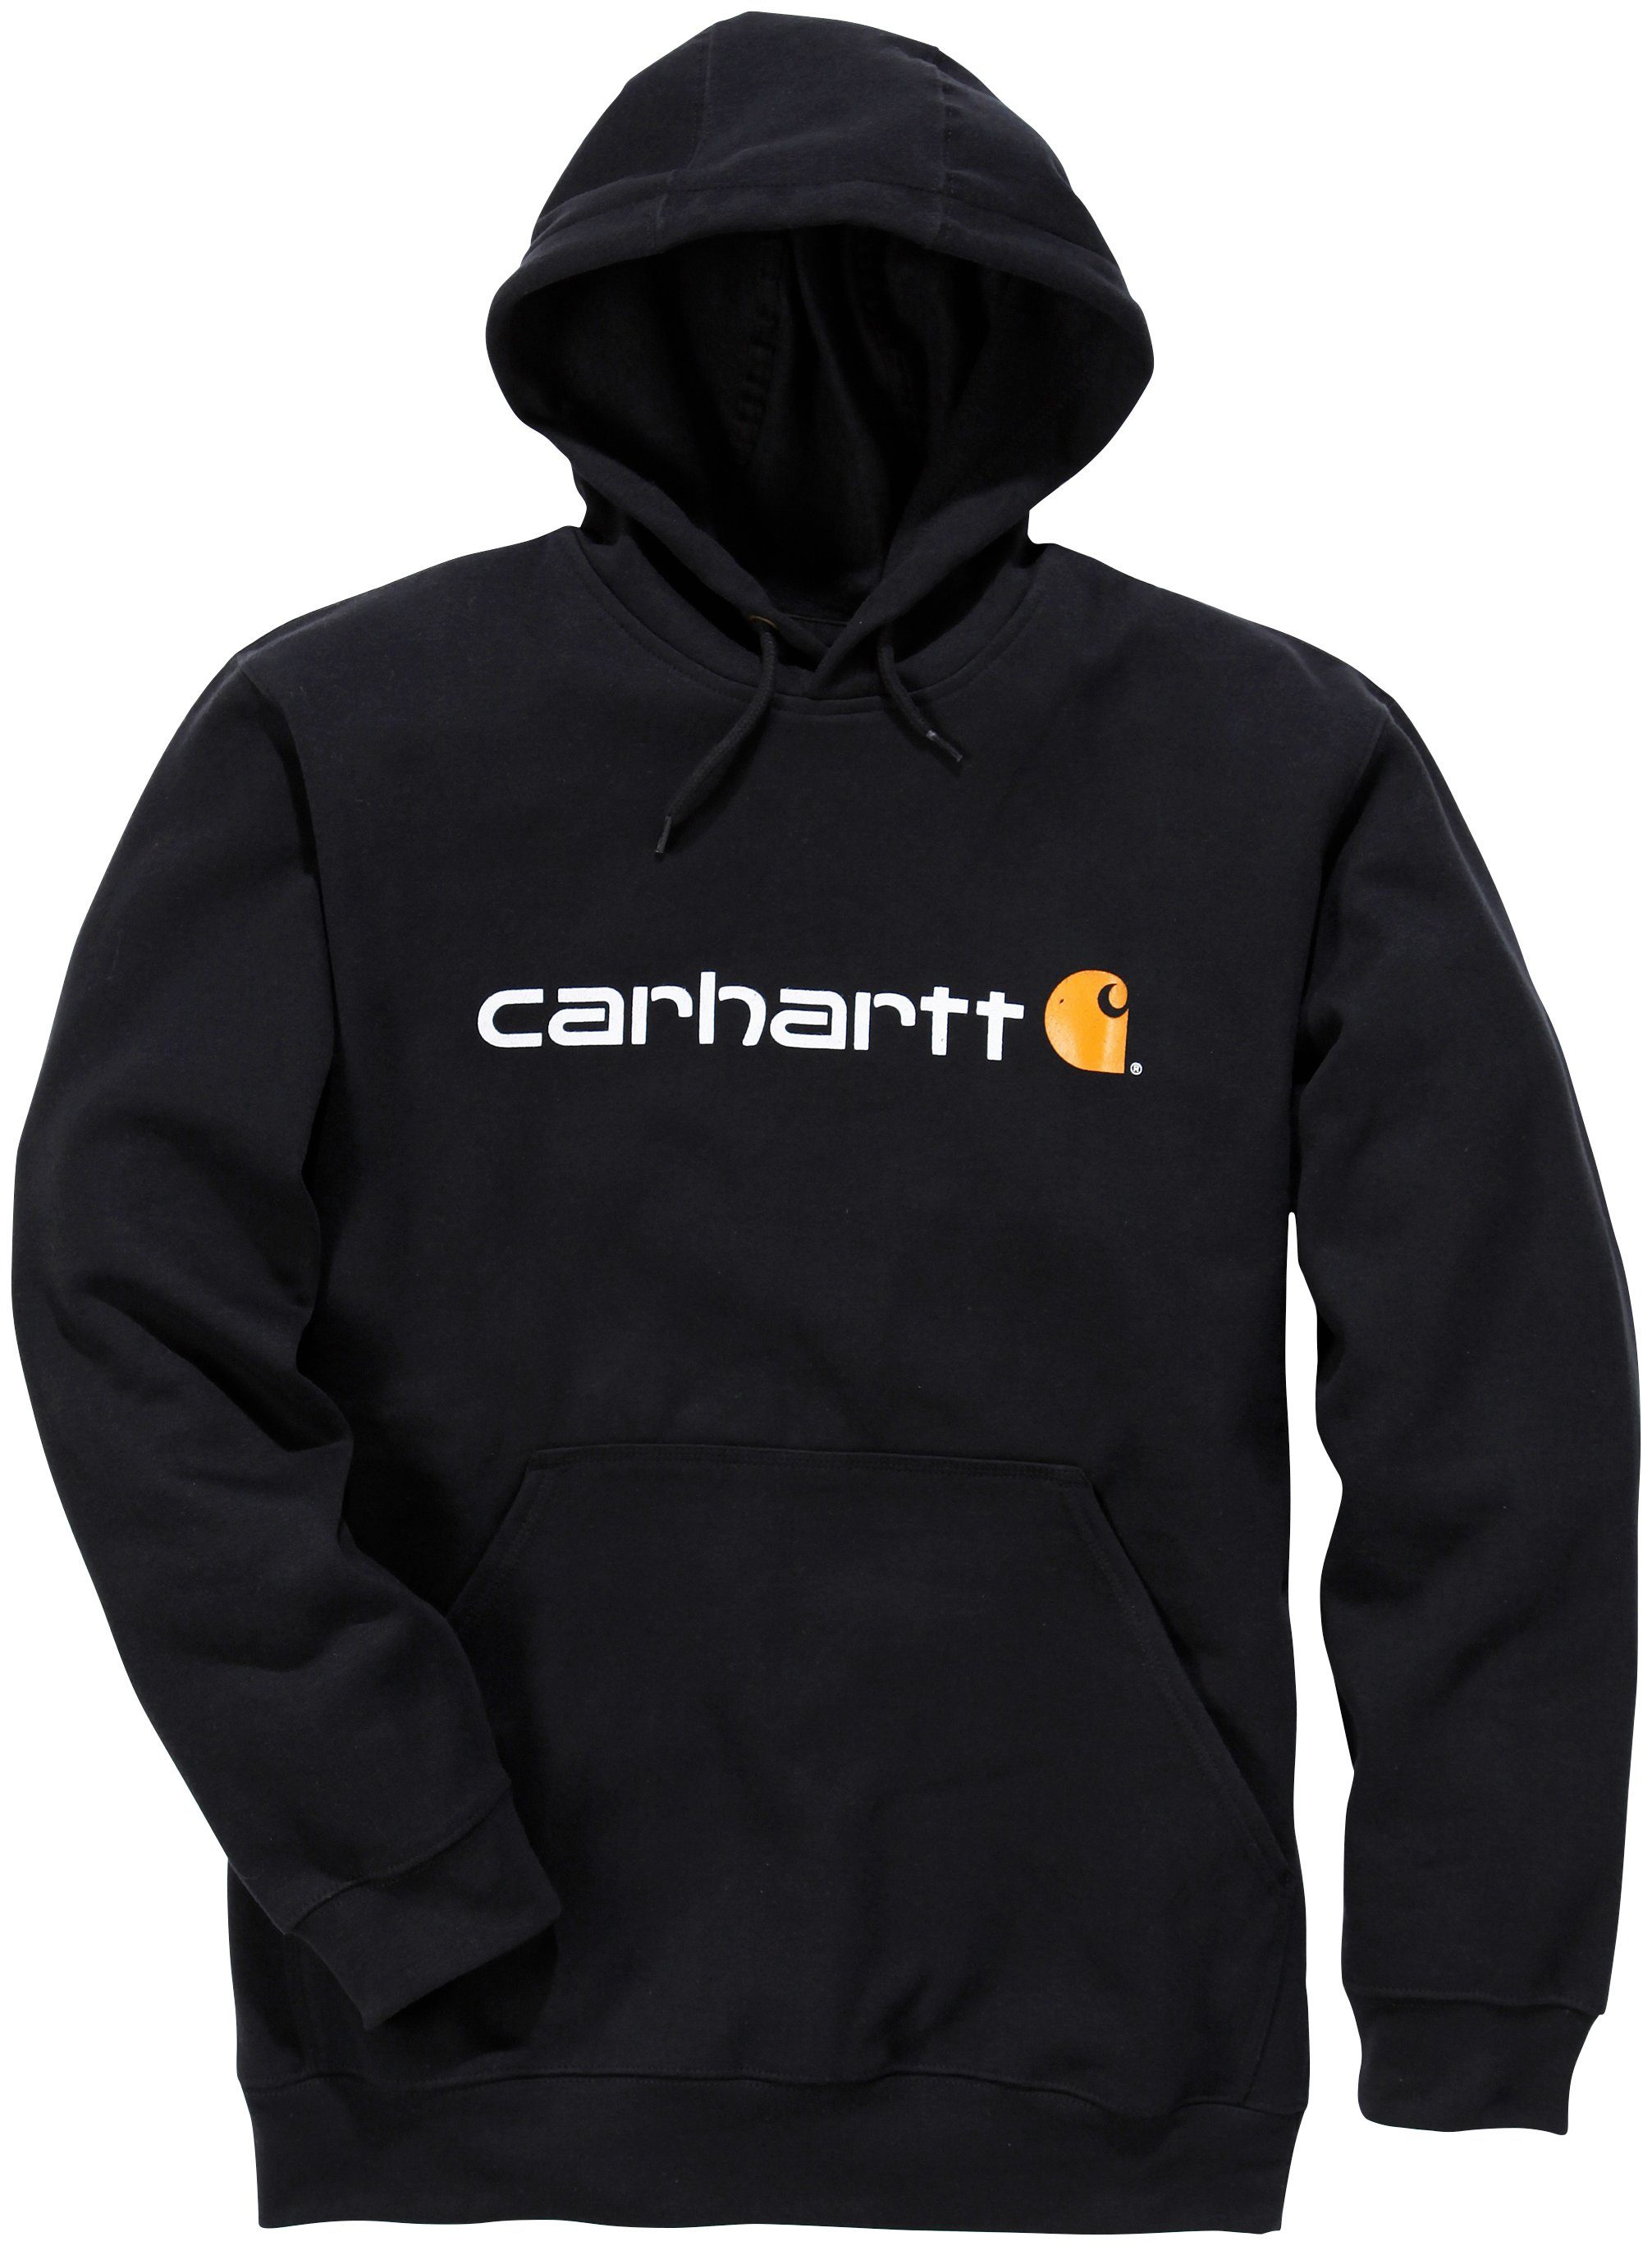 Carhartt Arbeitskleidung kaufen » Carhartt Workwear | OTTO